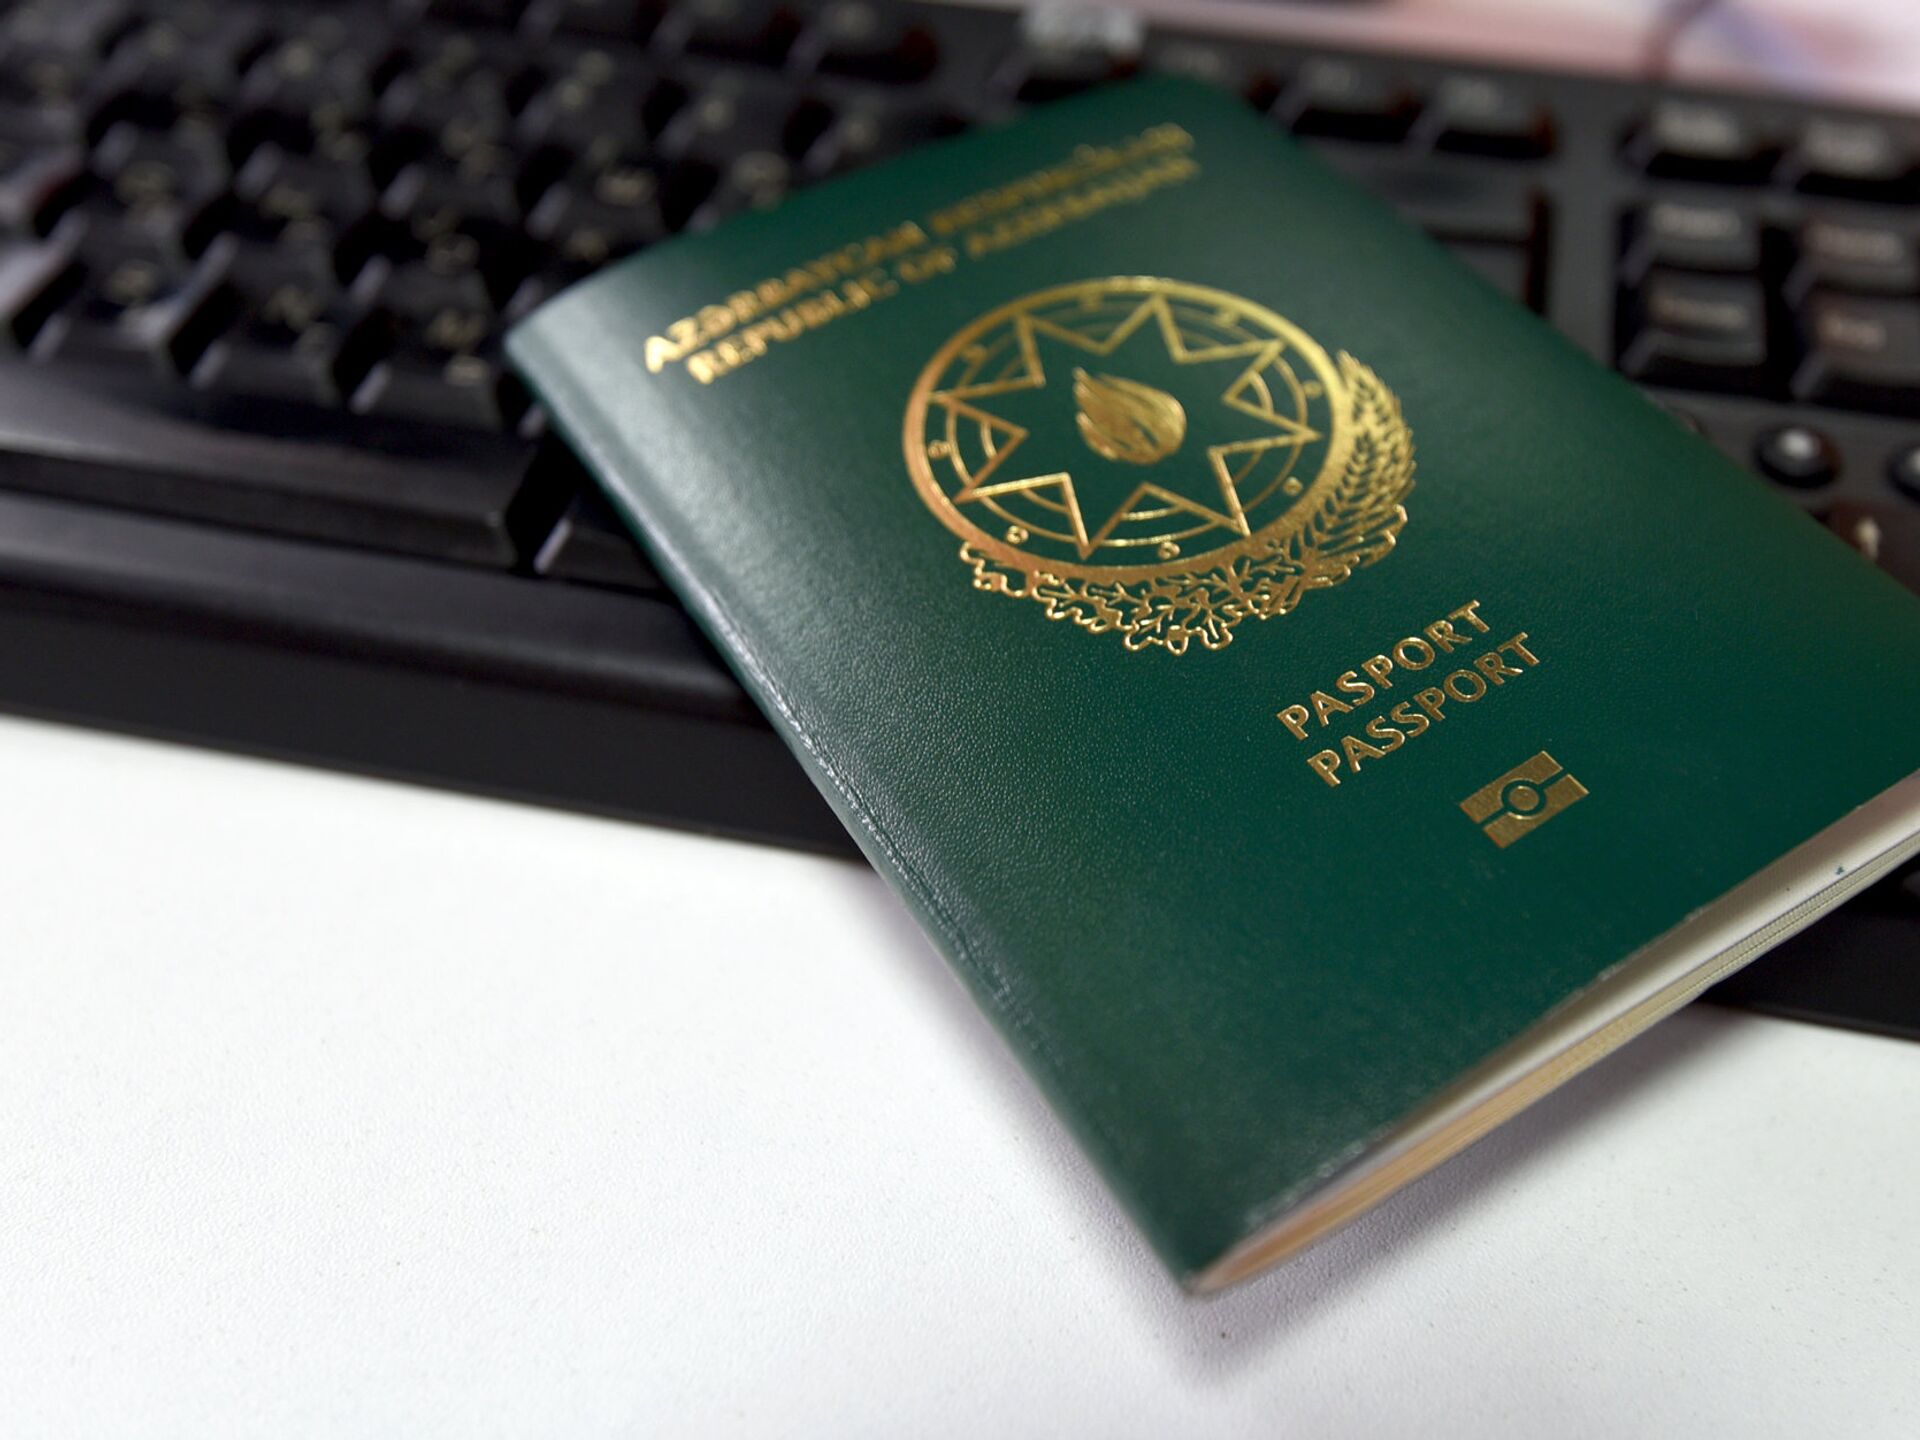 Получить гражданство гражданину азербайджана